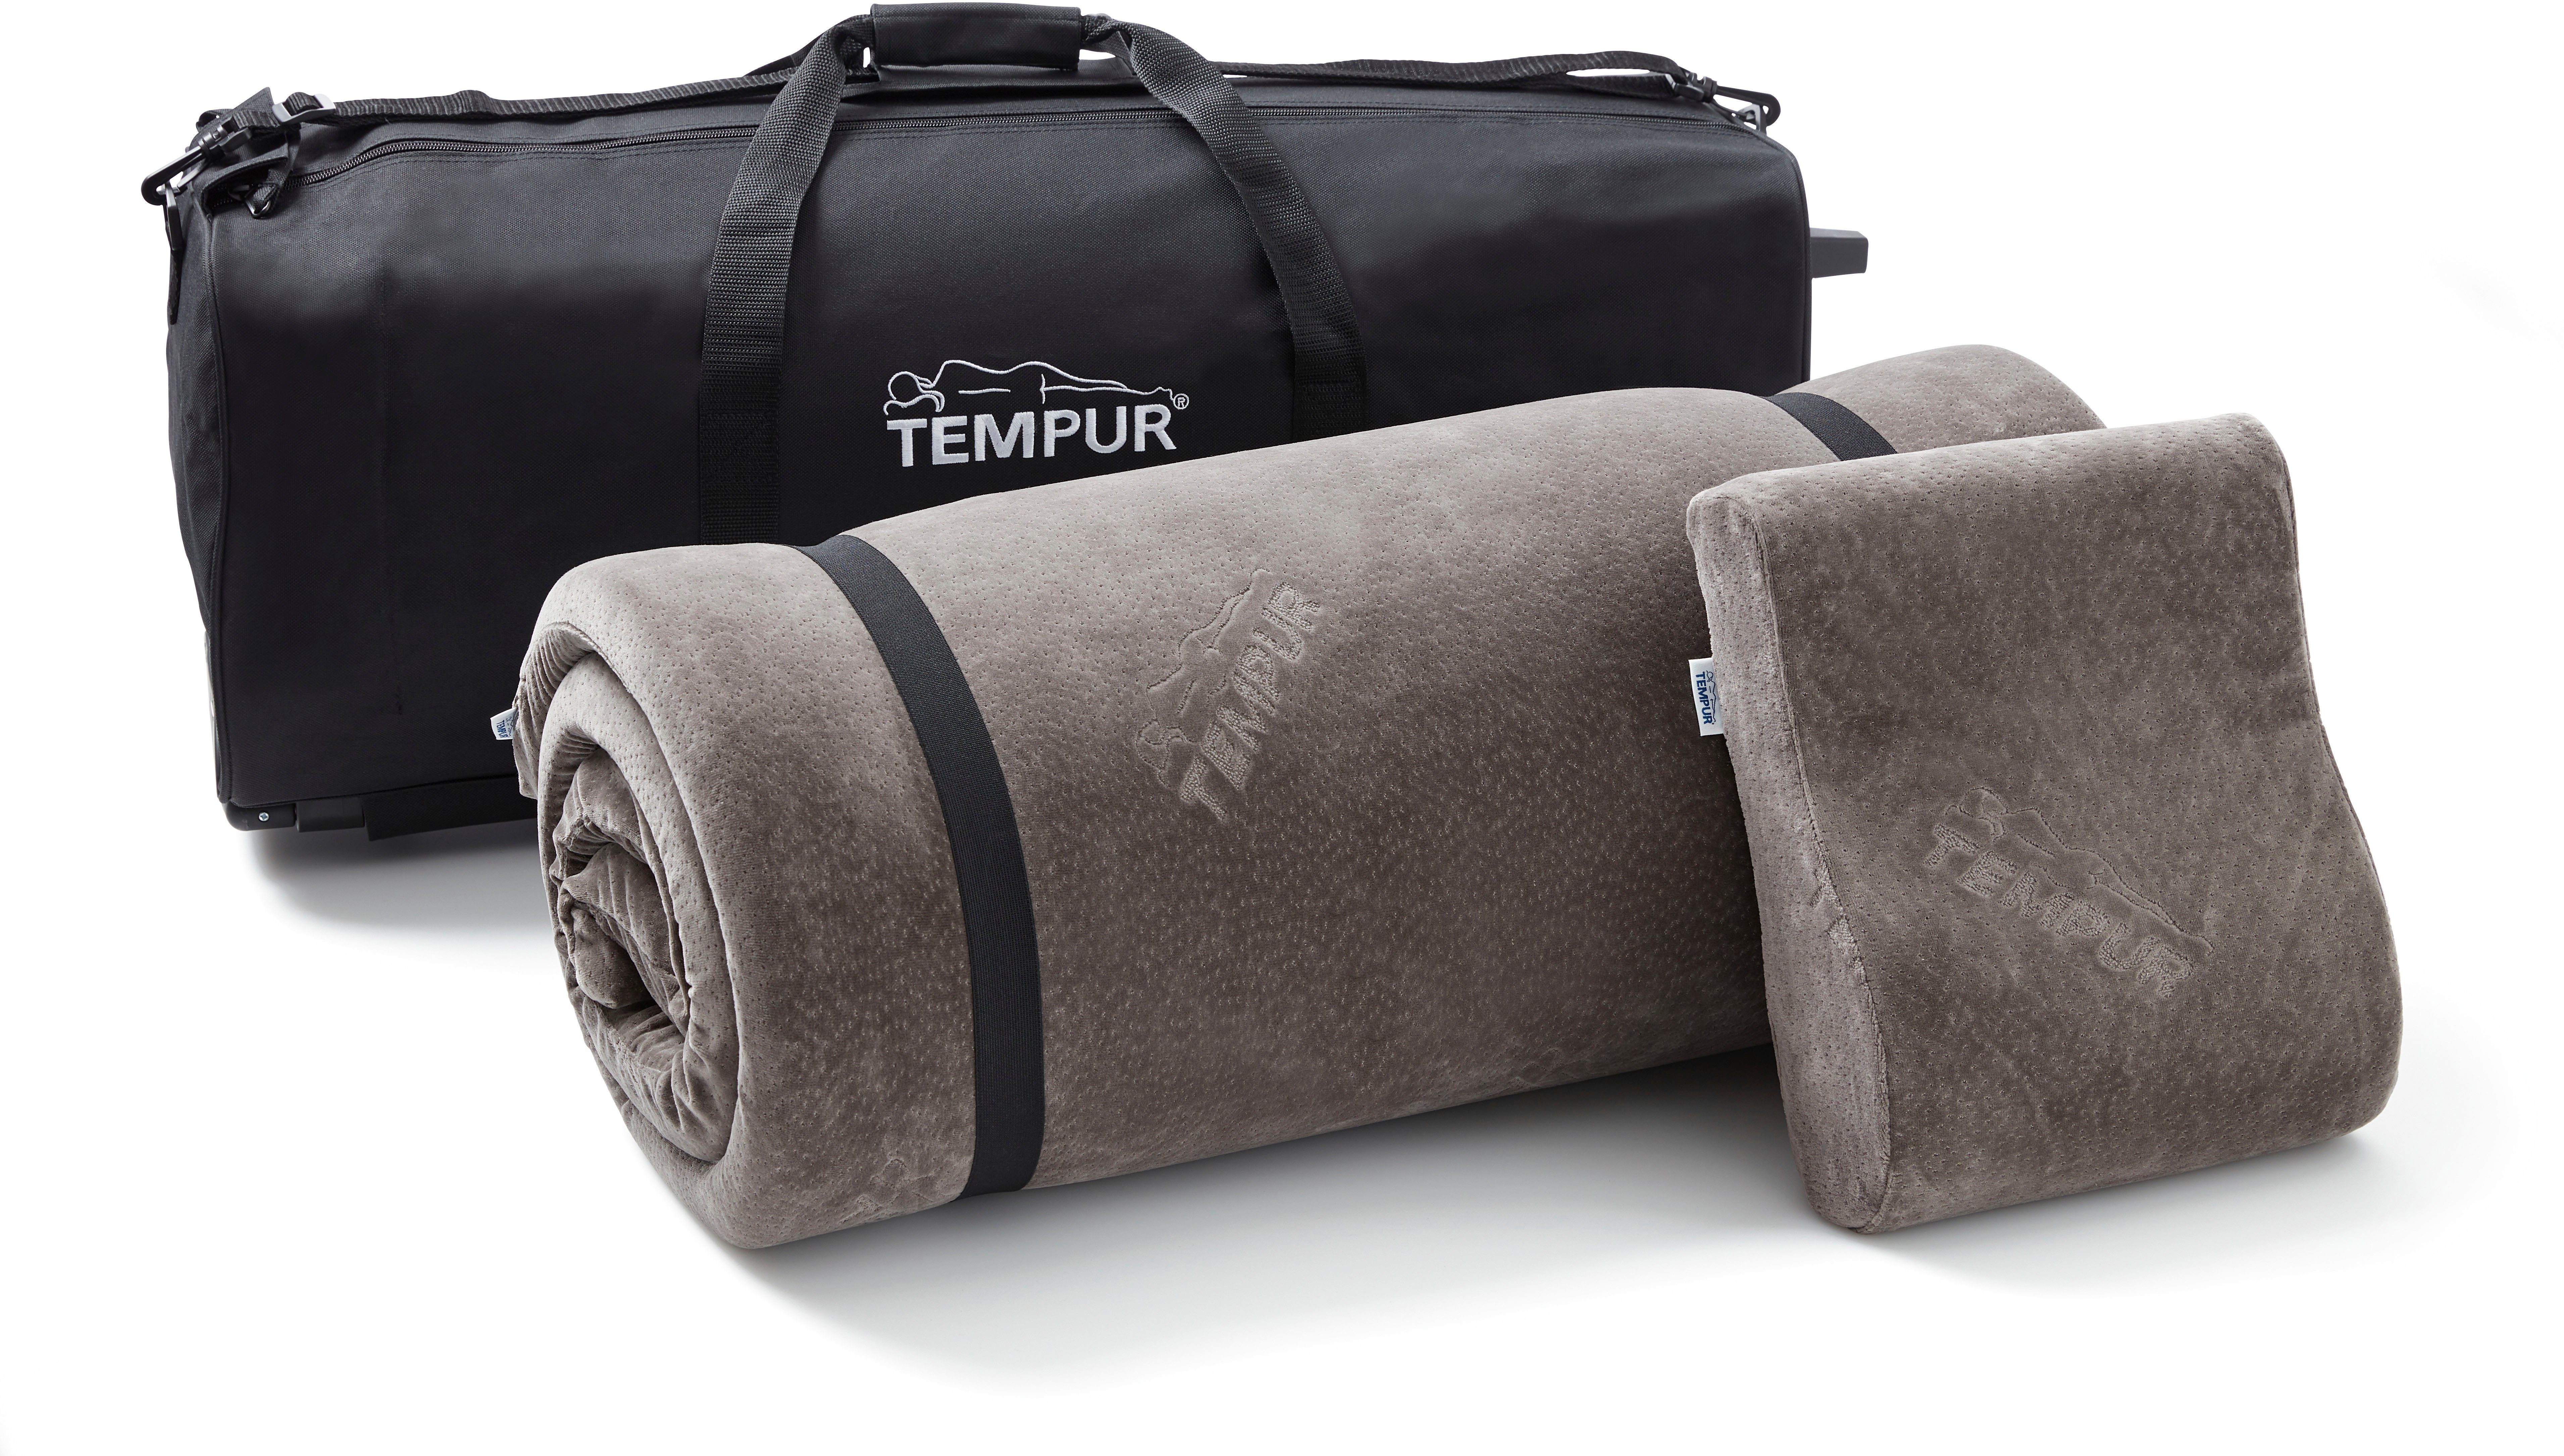 Kopfkissen + Topper, Schlafsystem Polyester, TEMPUR® Tempur, unterwegs tragbare 75% Bezug: 25% Reiseset, Baumwolle, für